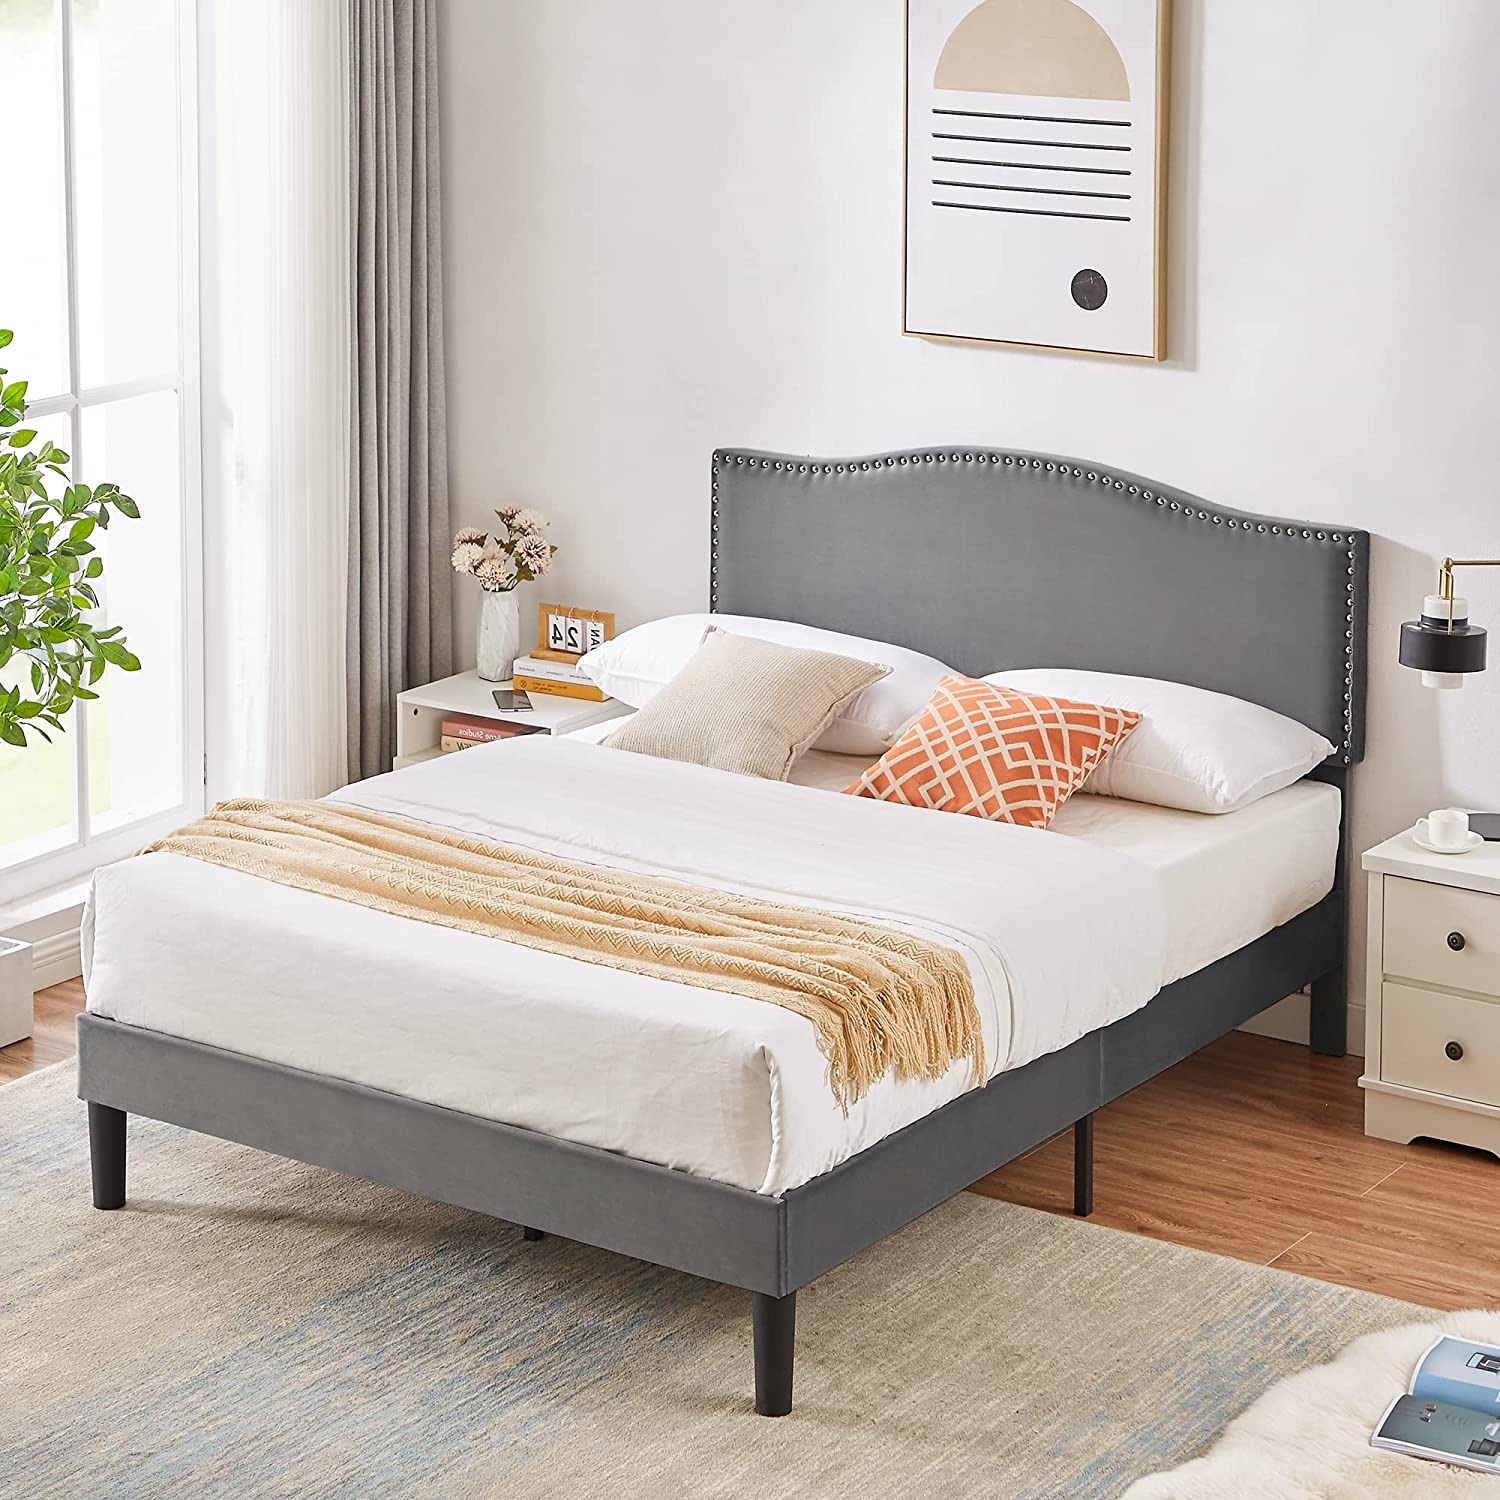 VECELO Bed Frame Platform Bed Frame with Upholstered Headboard, Strong Frame and Wooden Slats Support